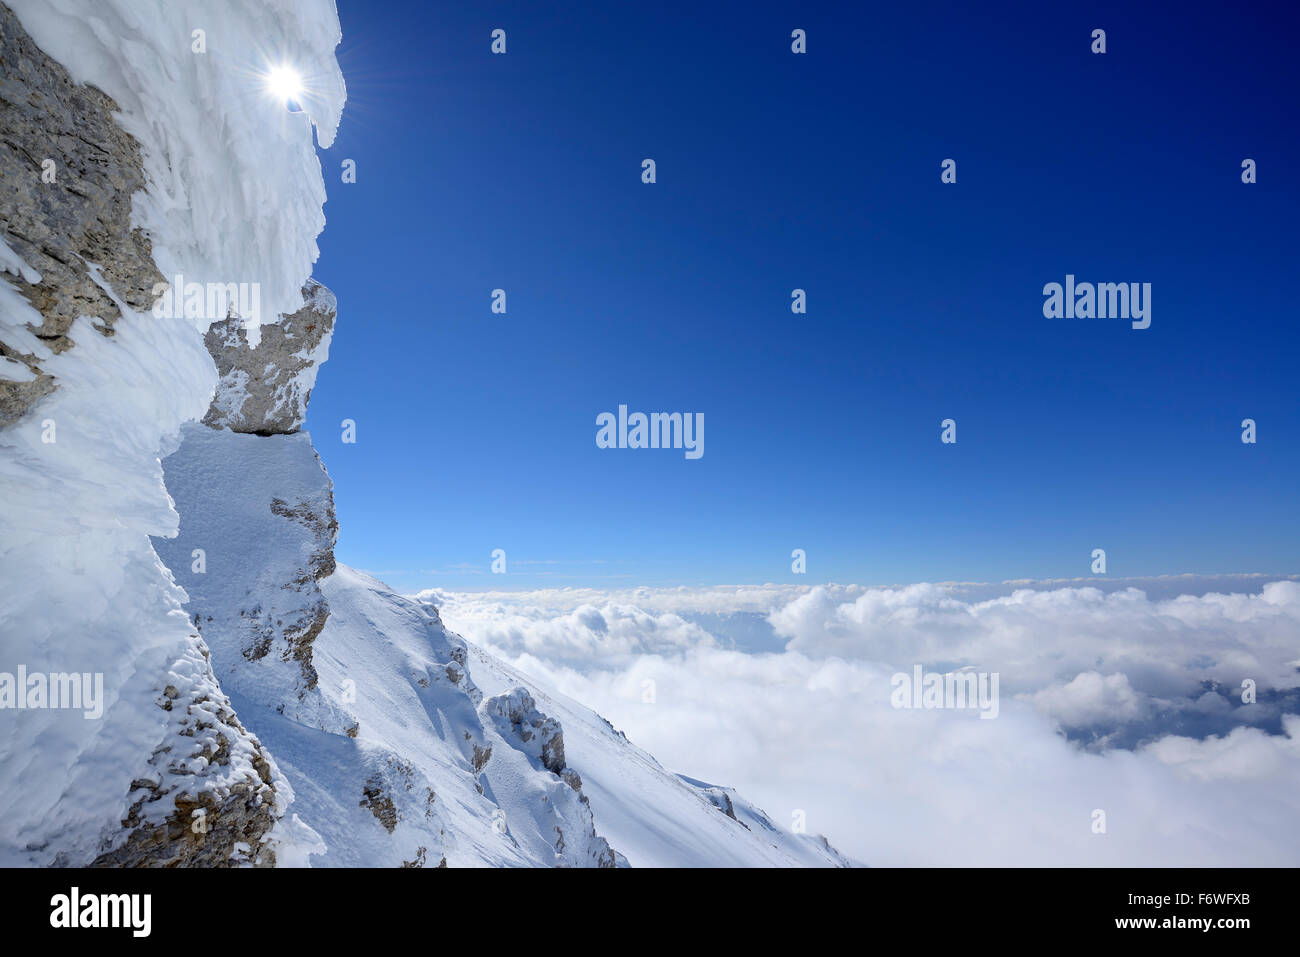 Snow-covered rock with sea of fog in the valley, Rava della Vespa, Monte Amaro, Majella, Abruzzi, Apennines, l' Aquila, Italy Stock Photo